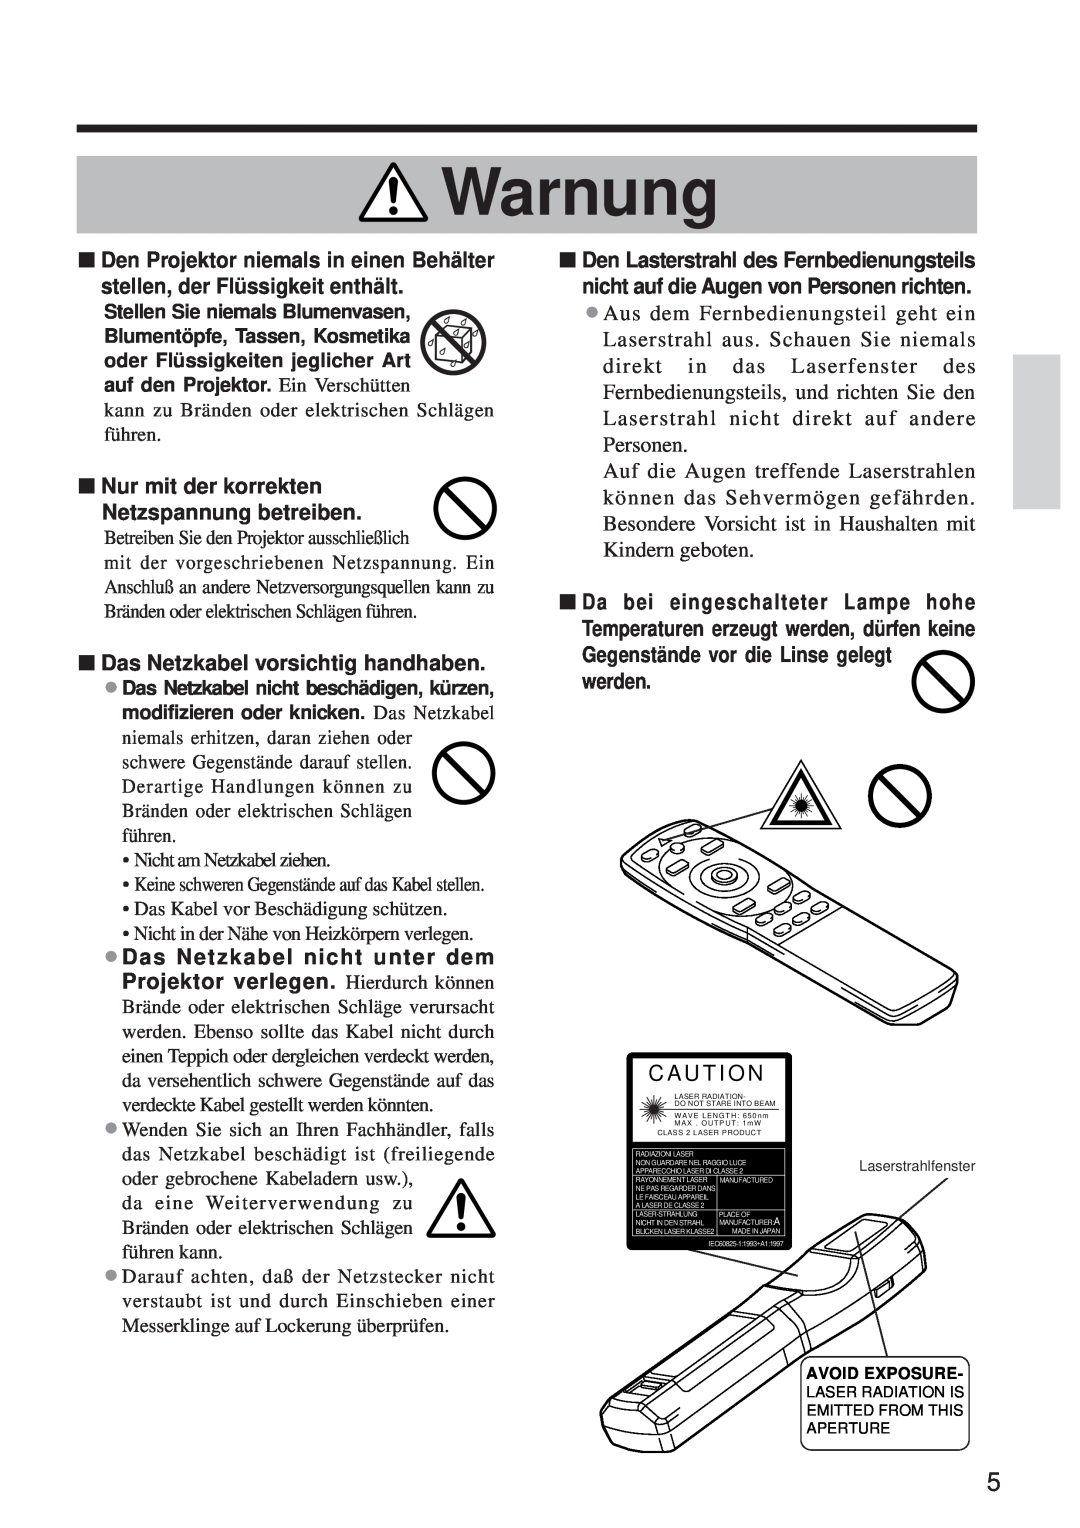 BOXLIGHT MP-650i user manual Nur mit der korrekten, Netzspannung betreiben, Das Netzkabel vorsichtig handhaben, Warnung 